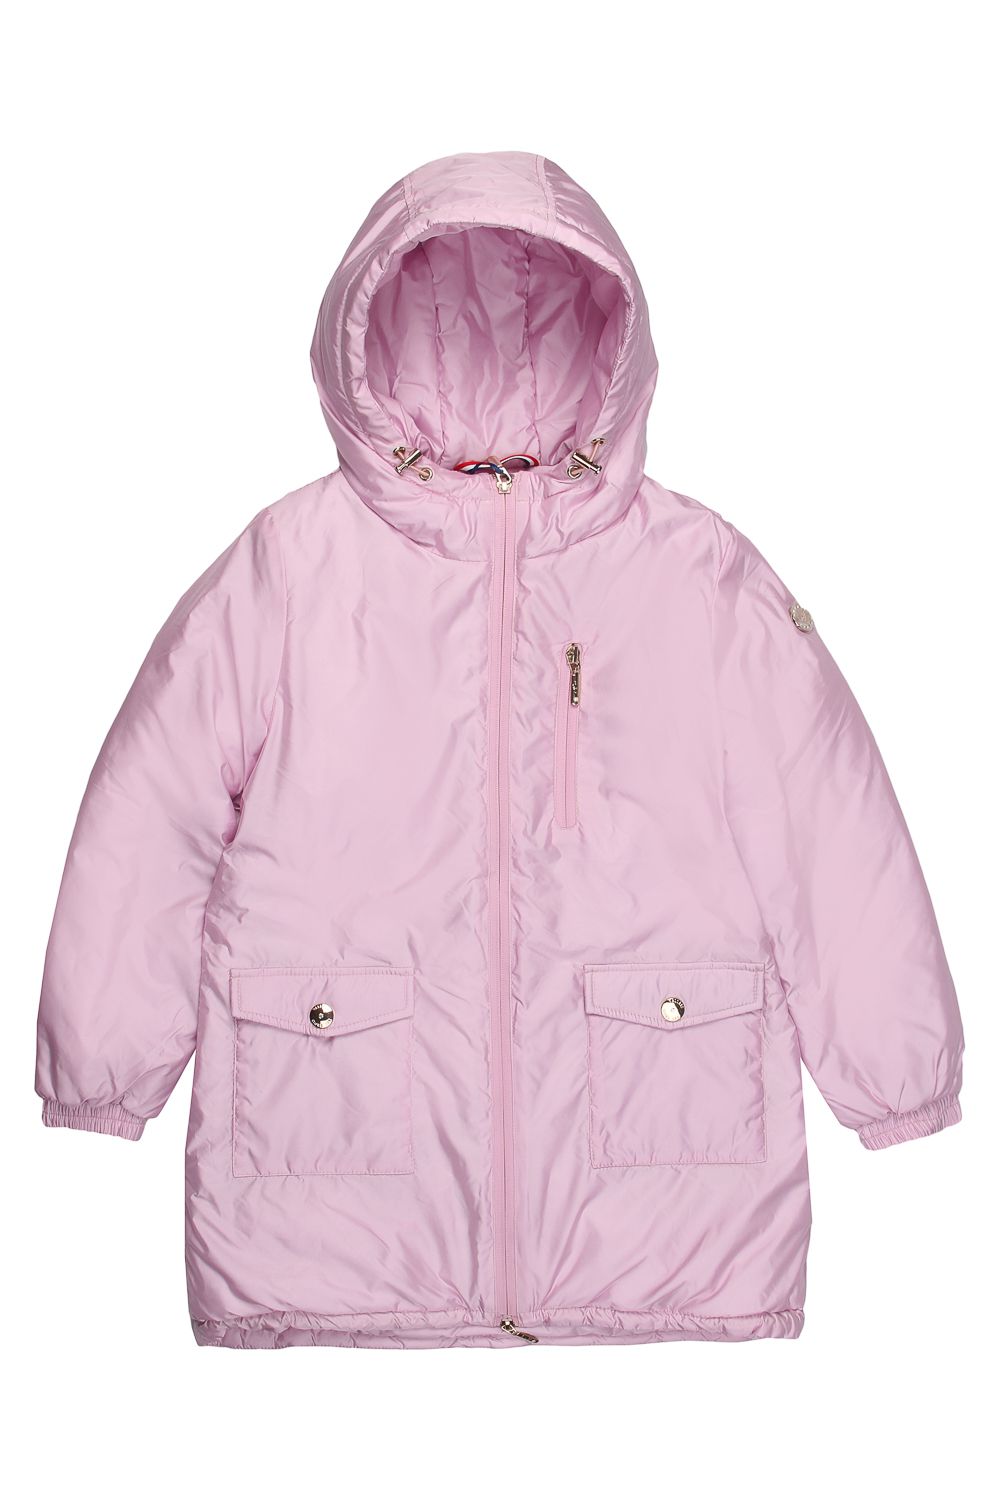 Куртка Les Trois Vallees, размер 128, цвет розовый 10A3914 - фото 1